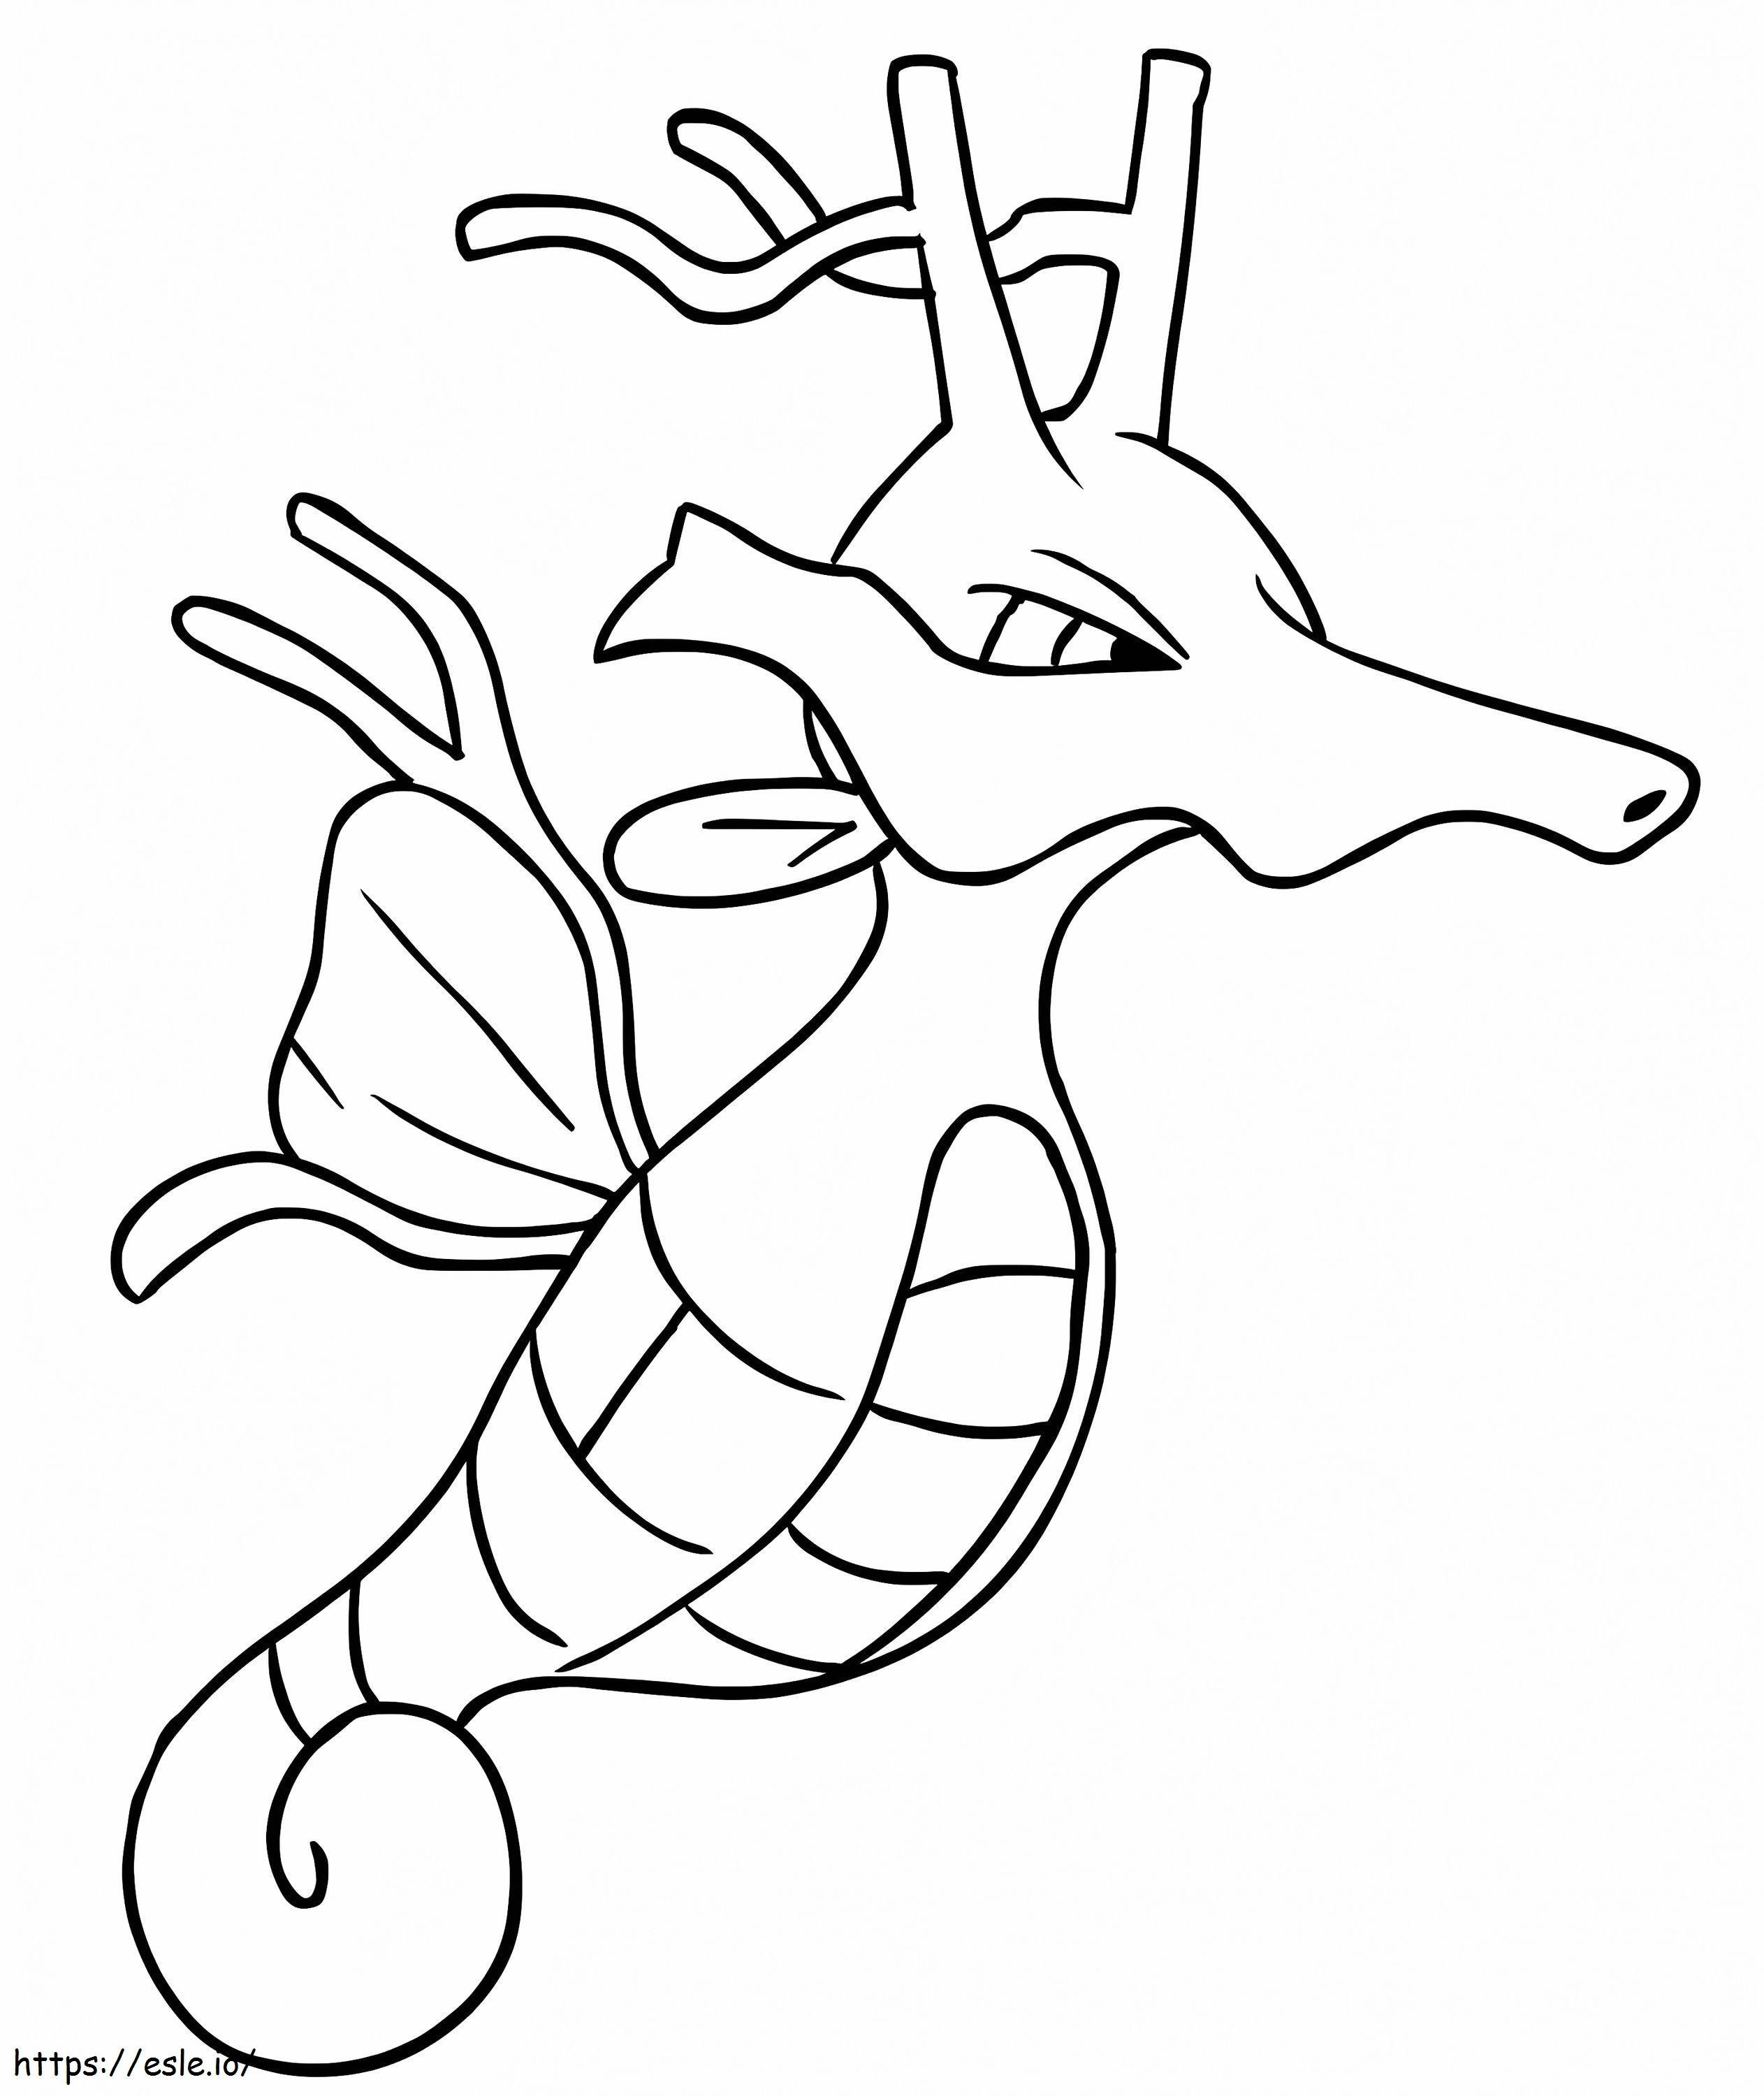 Coloriage Kingdra Pokémon 2 à imprimer dessin